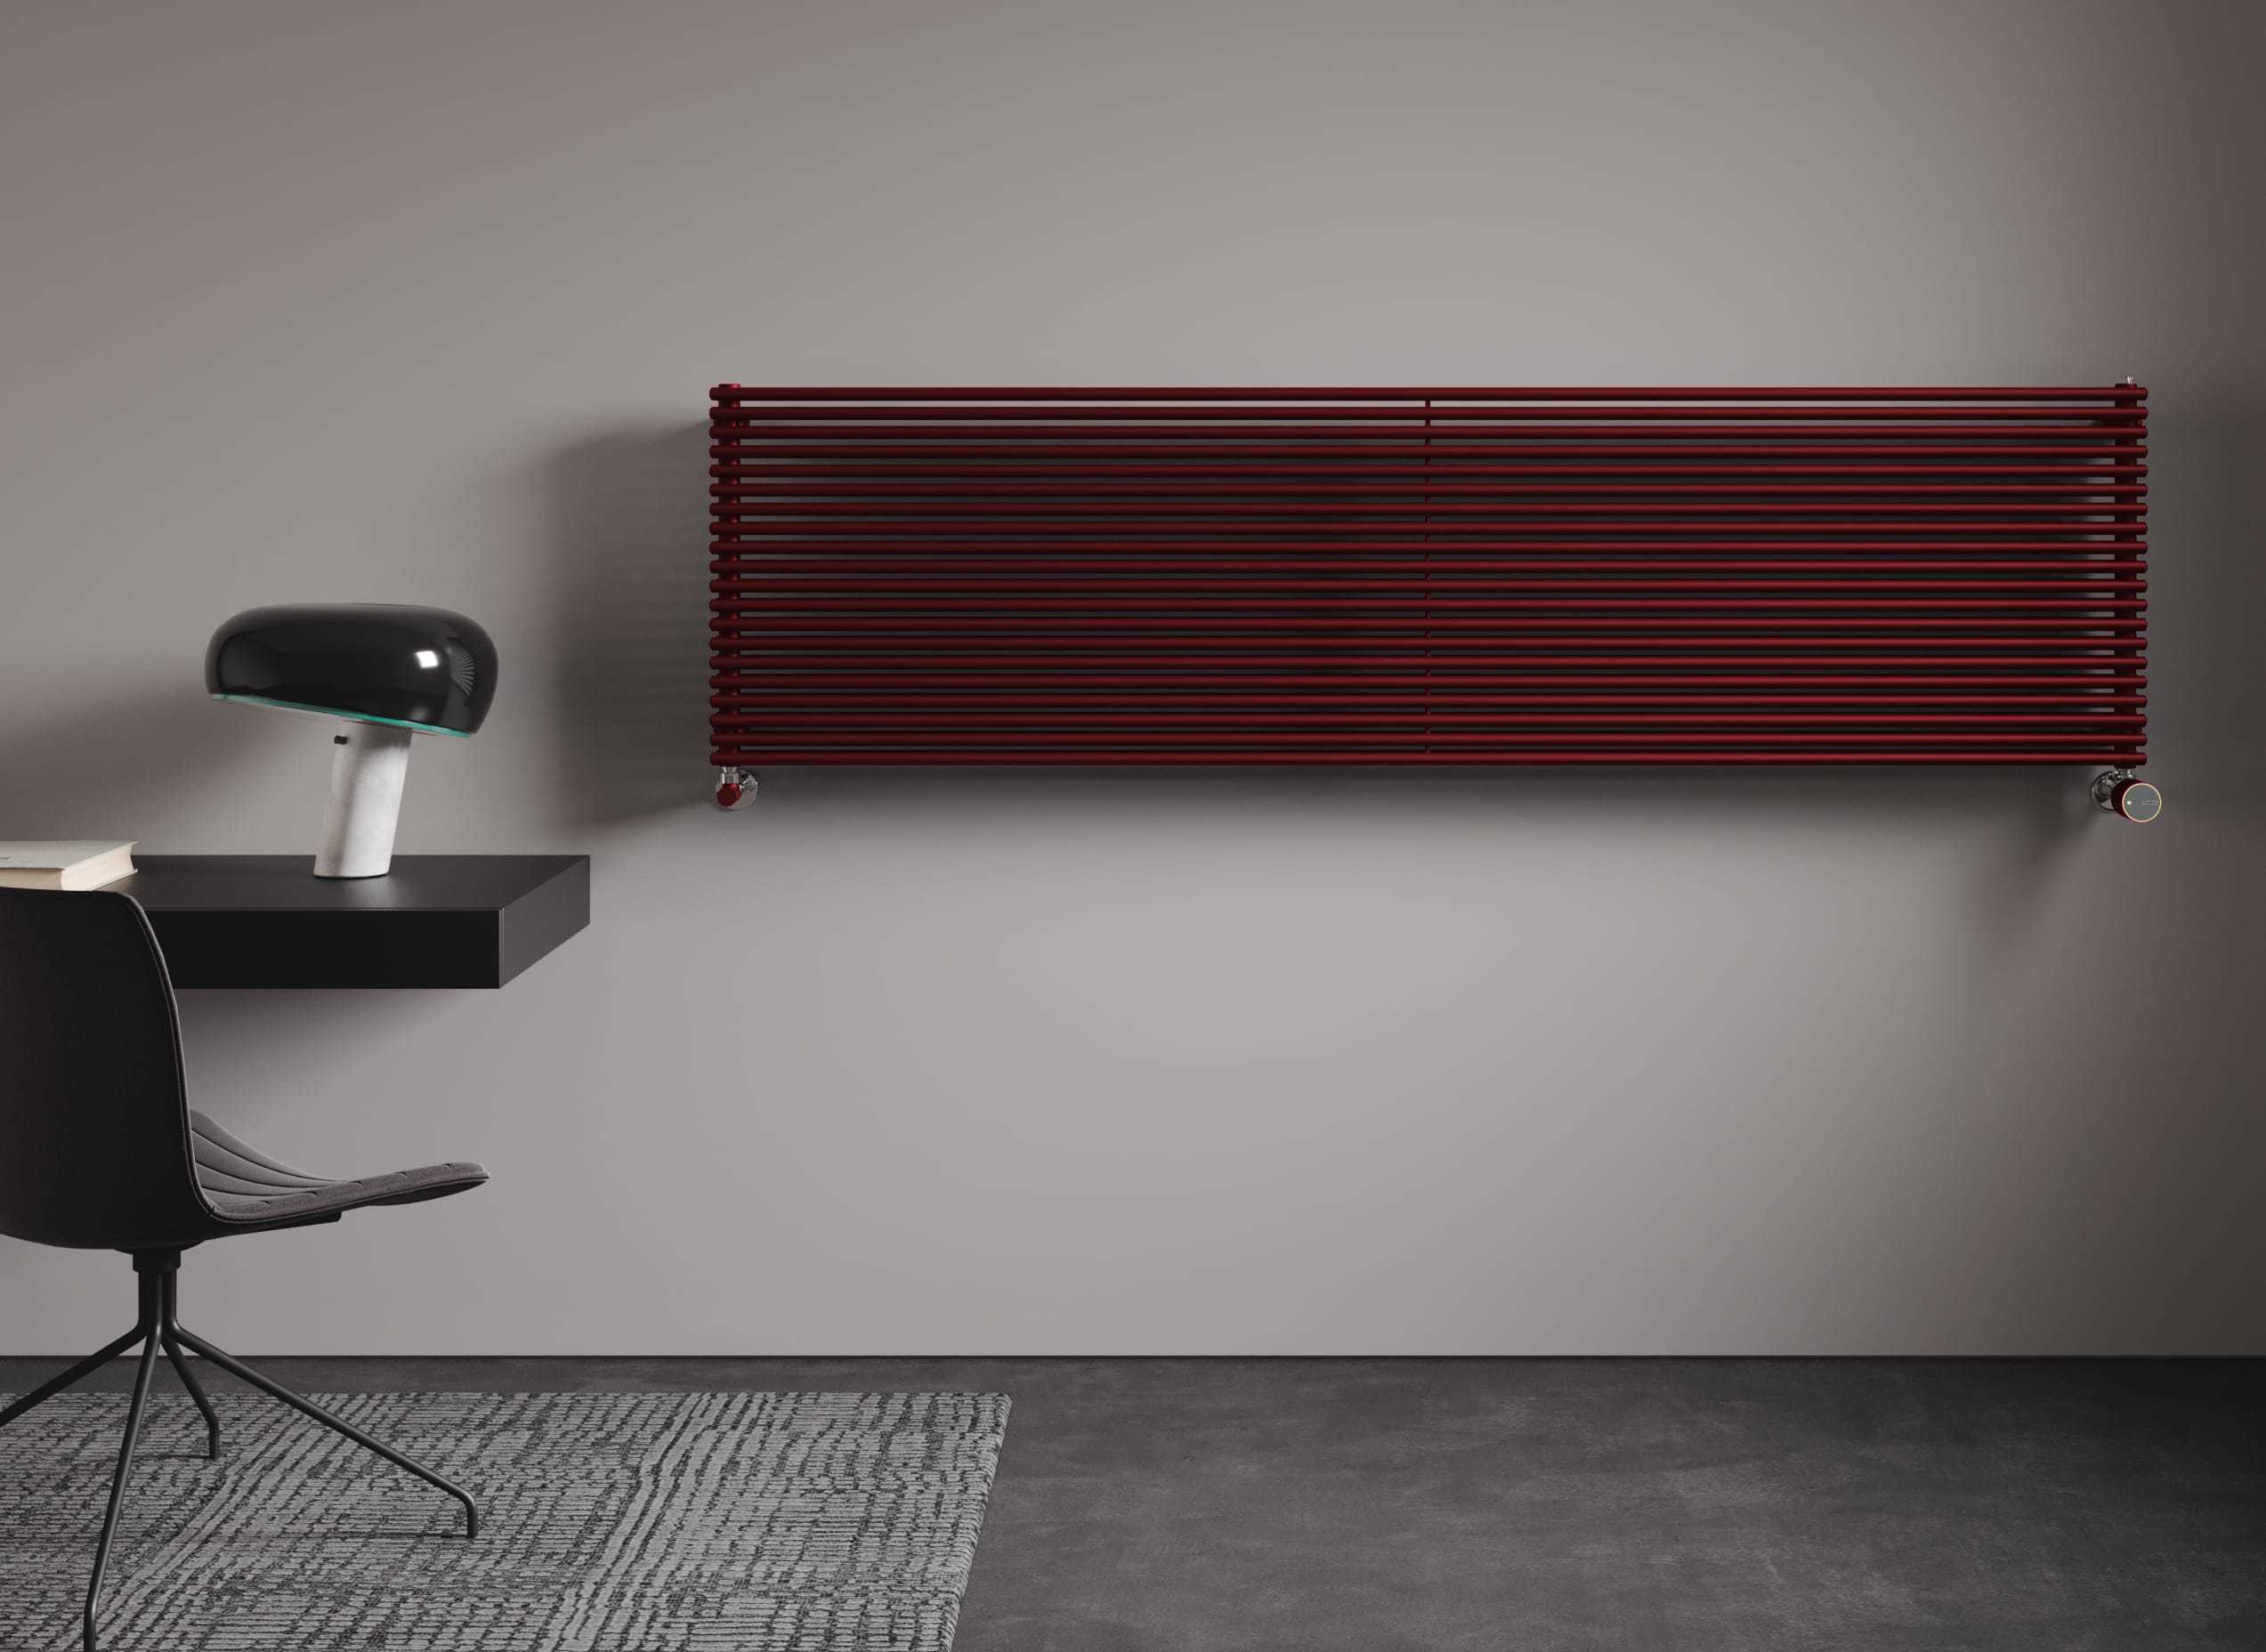 Arpa rosso radiatore termosifone termoarredo idraulico orizzontale con valvola testa termostatica intelligente wifi IRSAP NOW